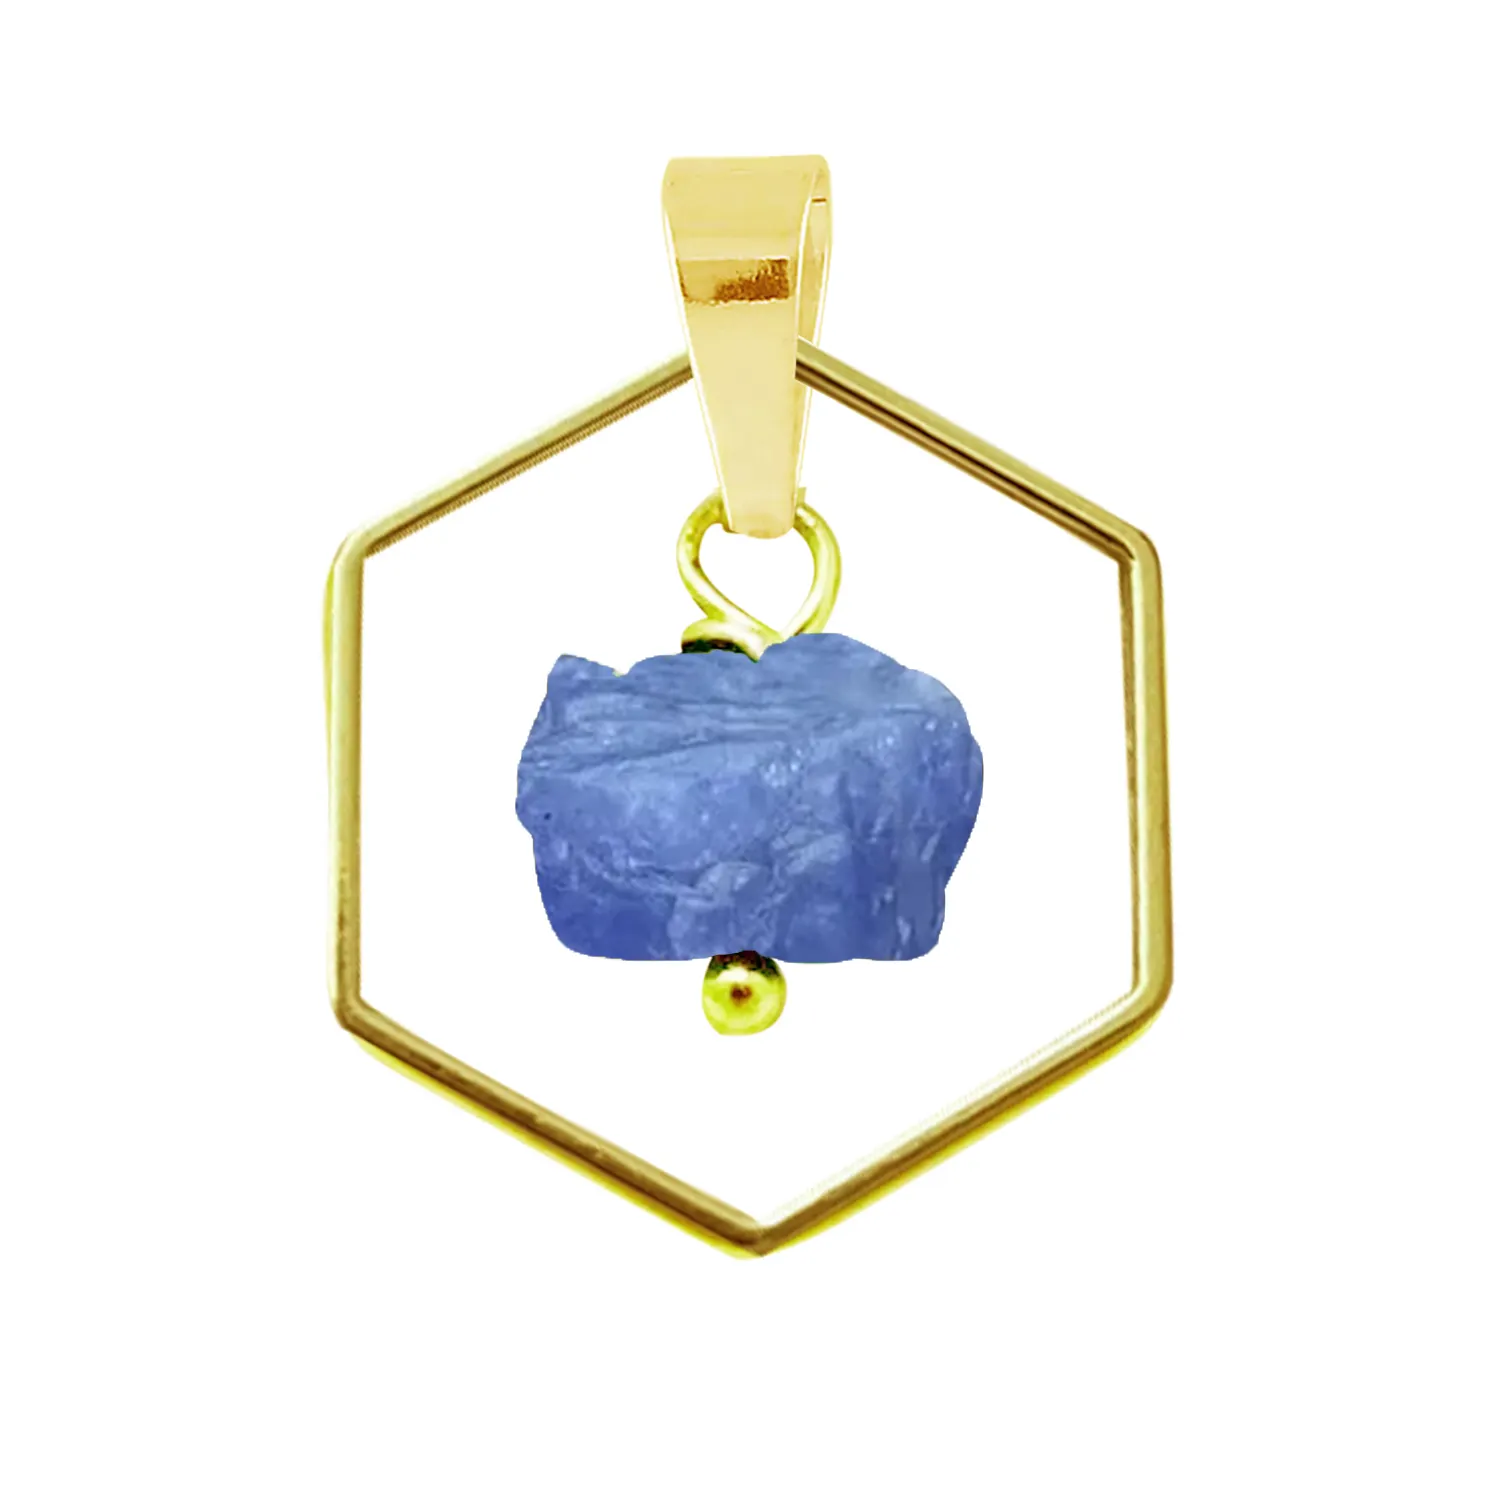 Piedra preciosa de tanzanita en bruto 18K alambre chapado en oro envuelto forma hexagonal bisel abierto diseñador piedra natal joyería colgante al por mayor